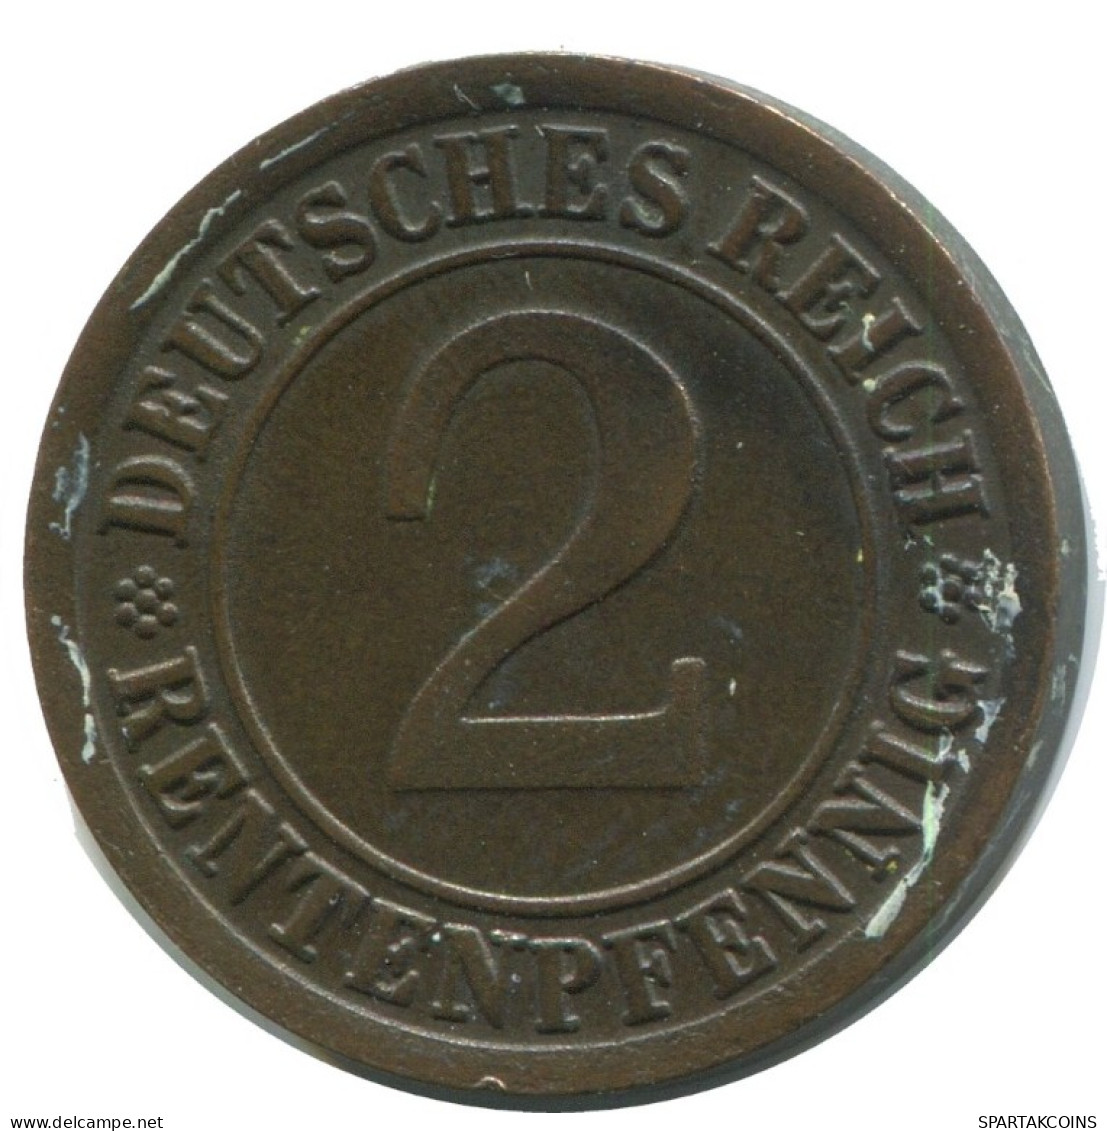 2 RENTENPFENNIG 1924 J DEUTSCHLAND Münze GERMANY #AD463.9.D.A - 2 Rentenpfennig & 2 Reichspfennig